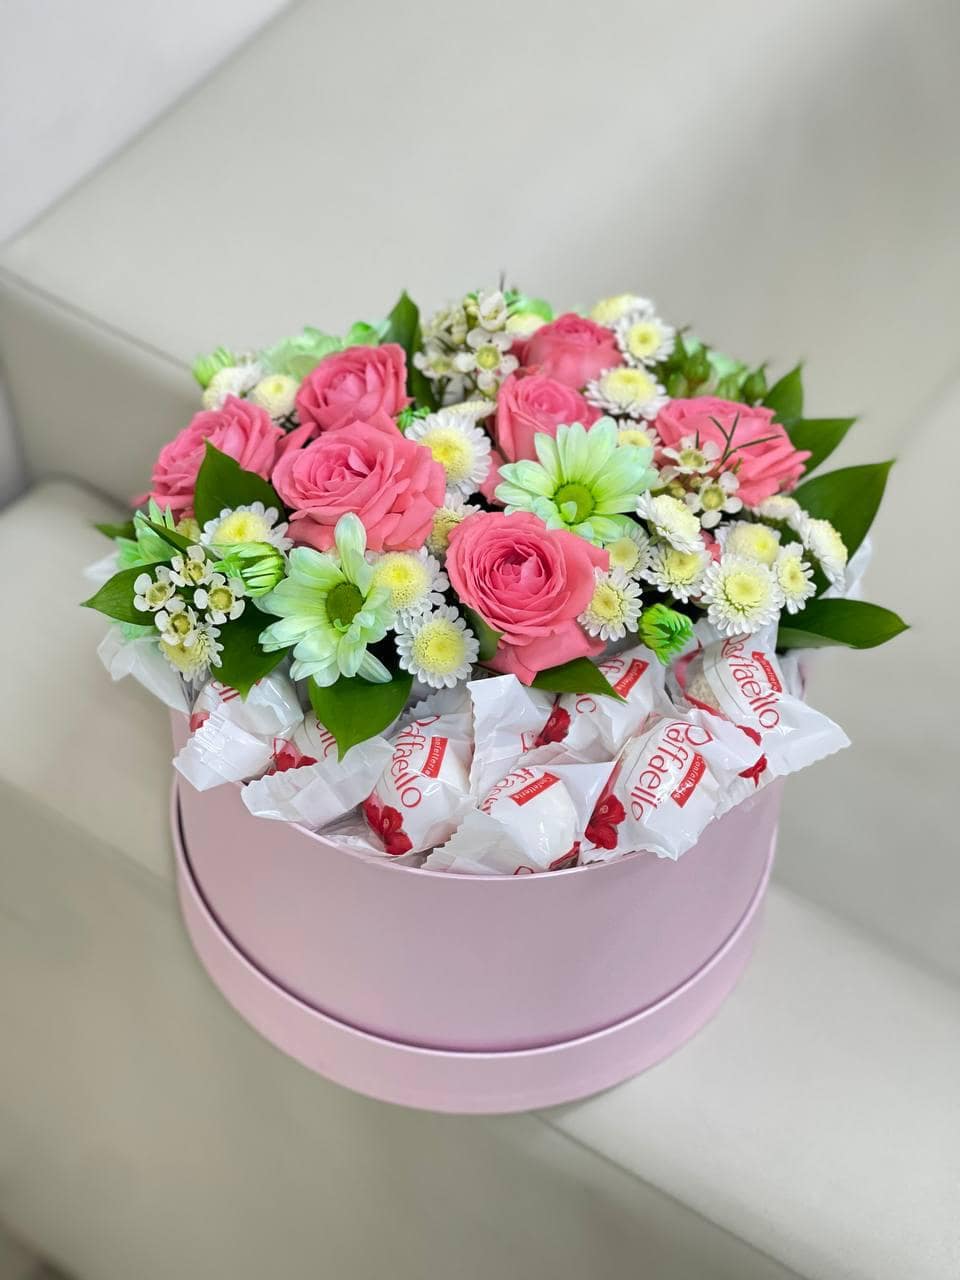 Букет цветов в коробке с конфетами. Нежные цветы и изысканные конфеты Рафаэлло складываются в уникальное сочетание. Доставка 